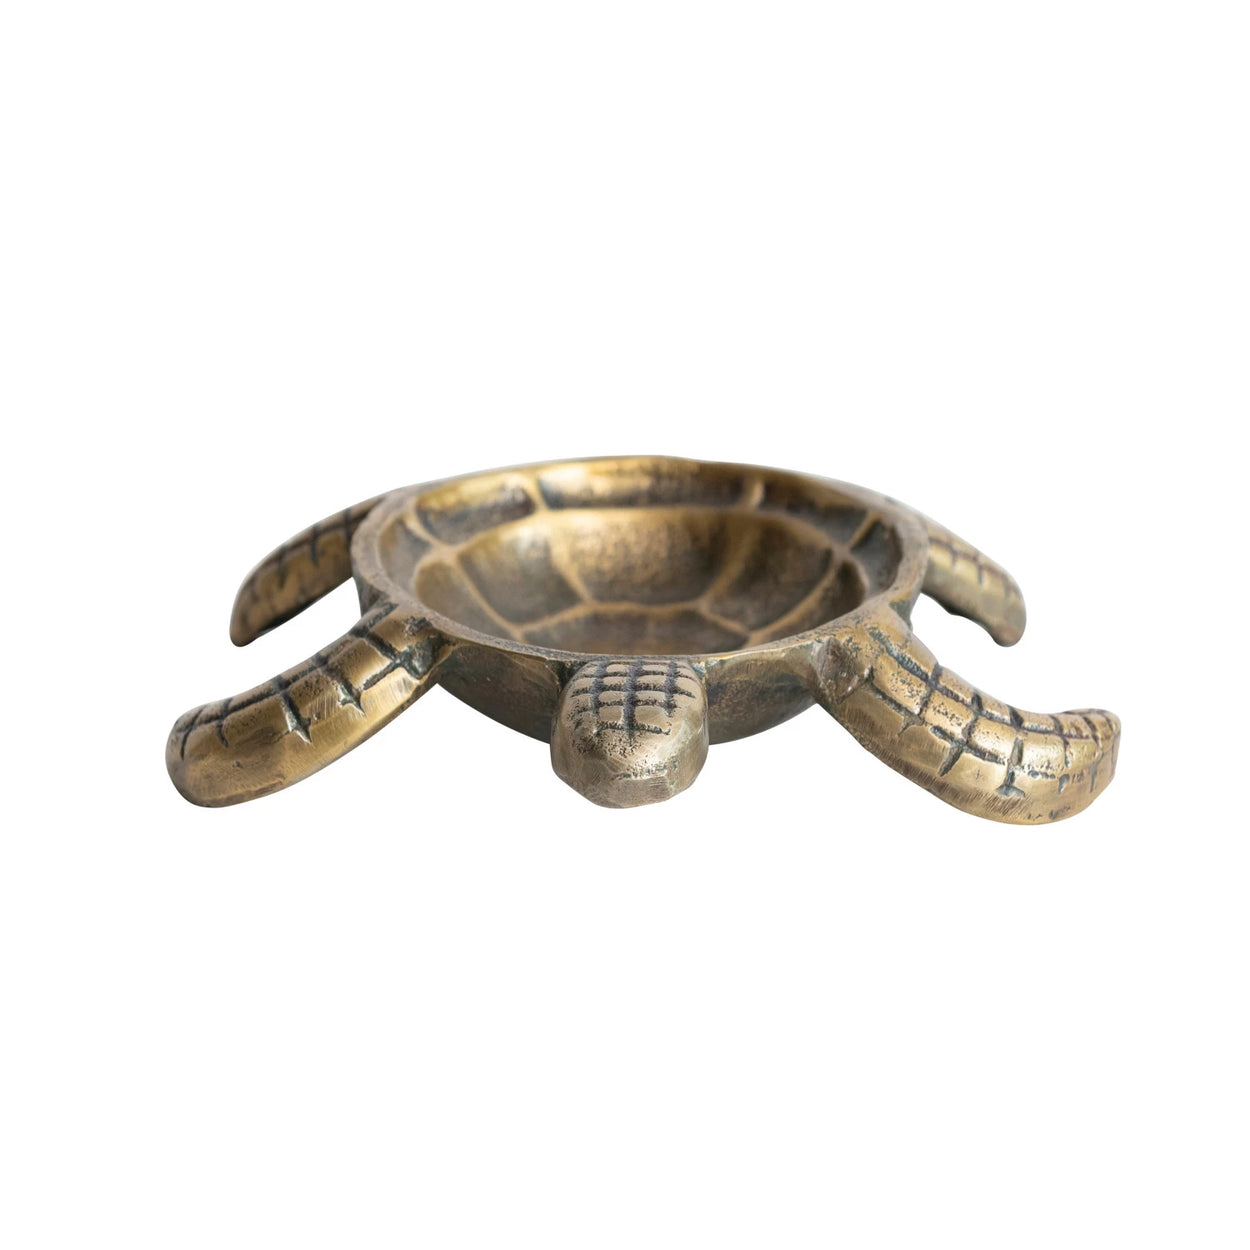 Antique Brass Cast Aluminum Tortoise Dish